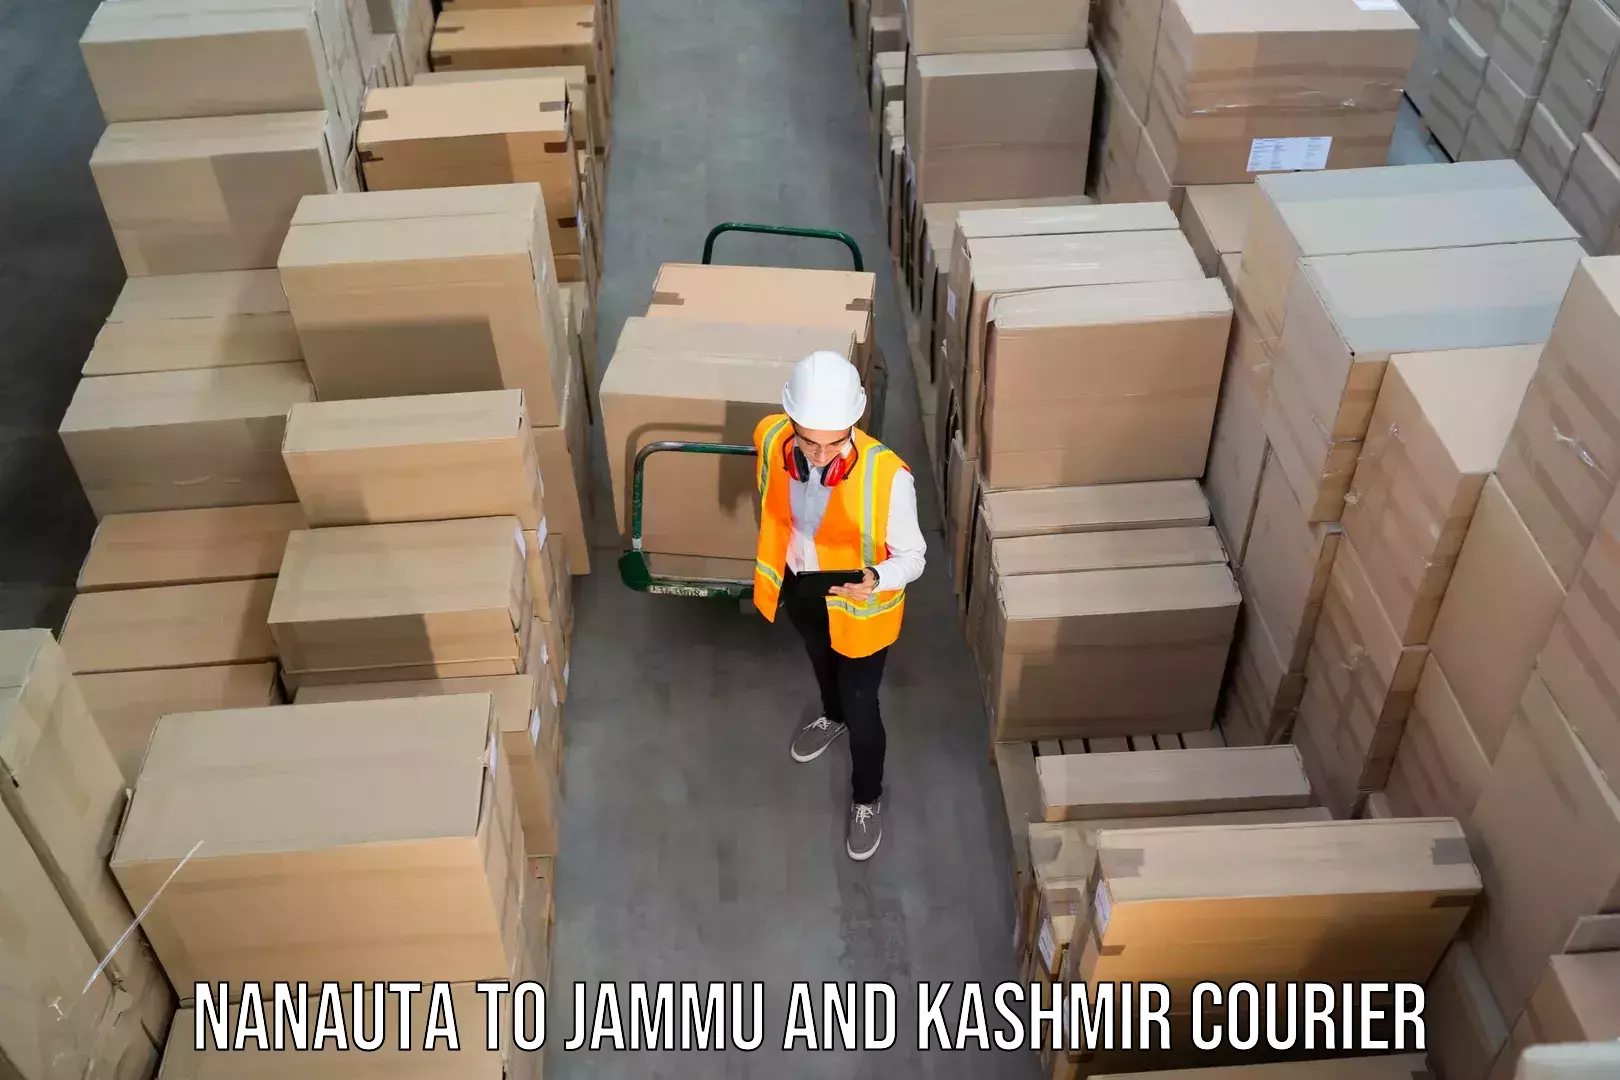 Dynamic courier operations Nanauta to Kathua